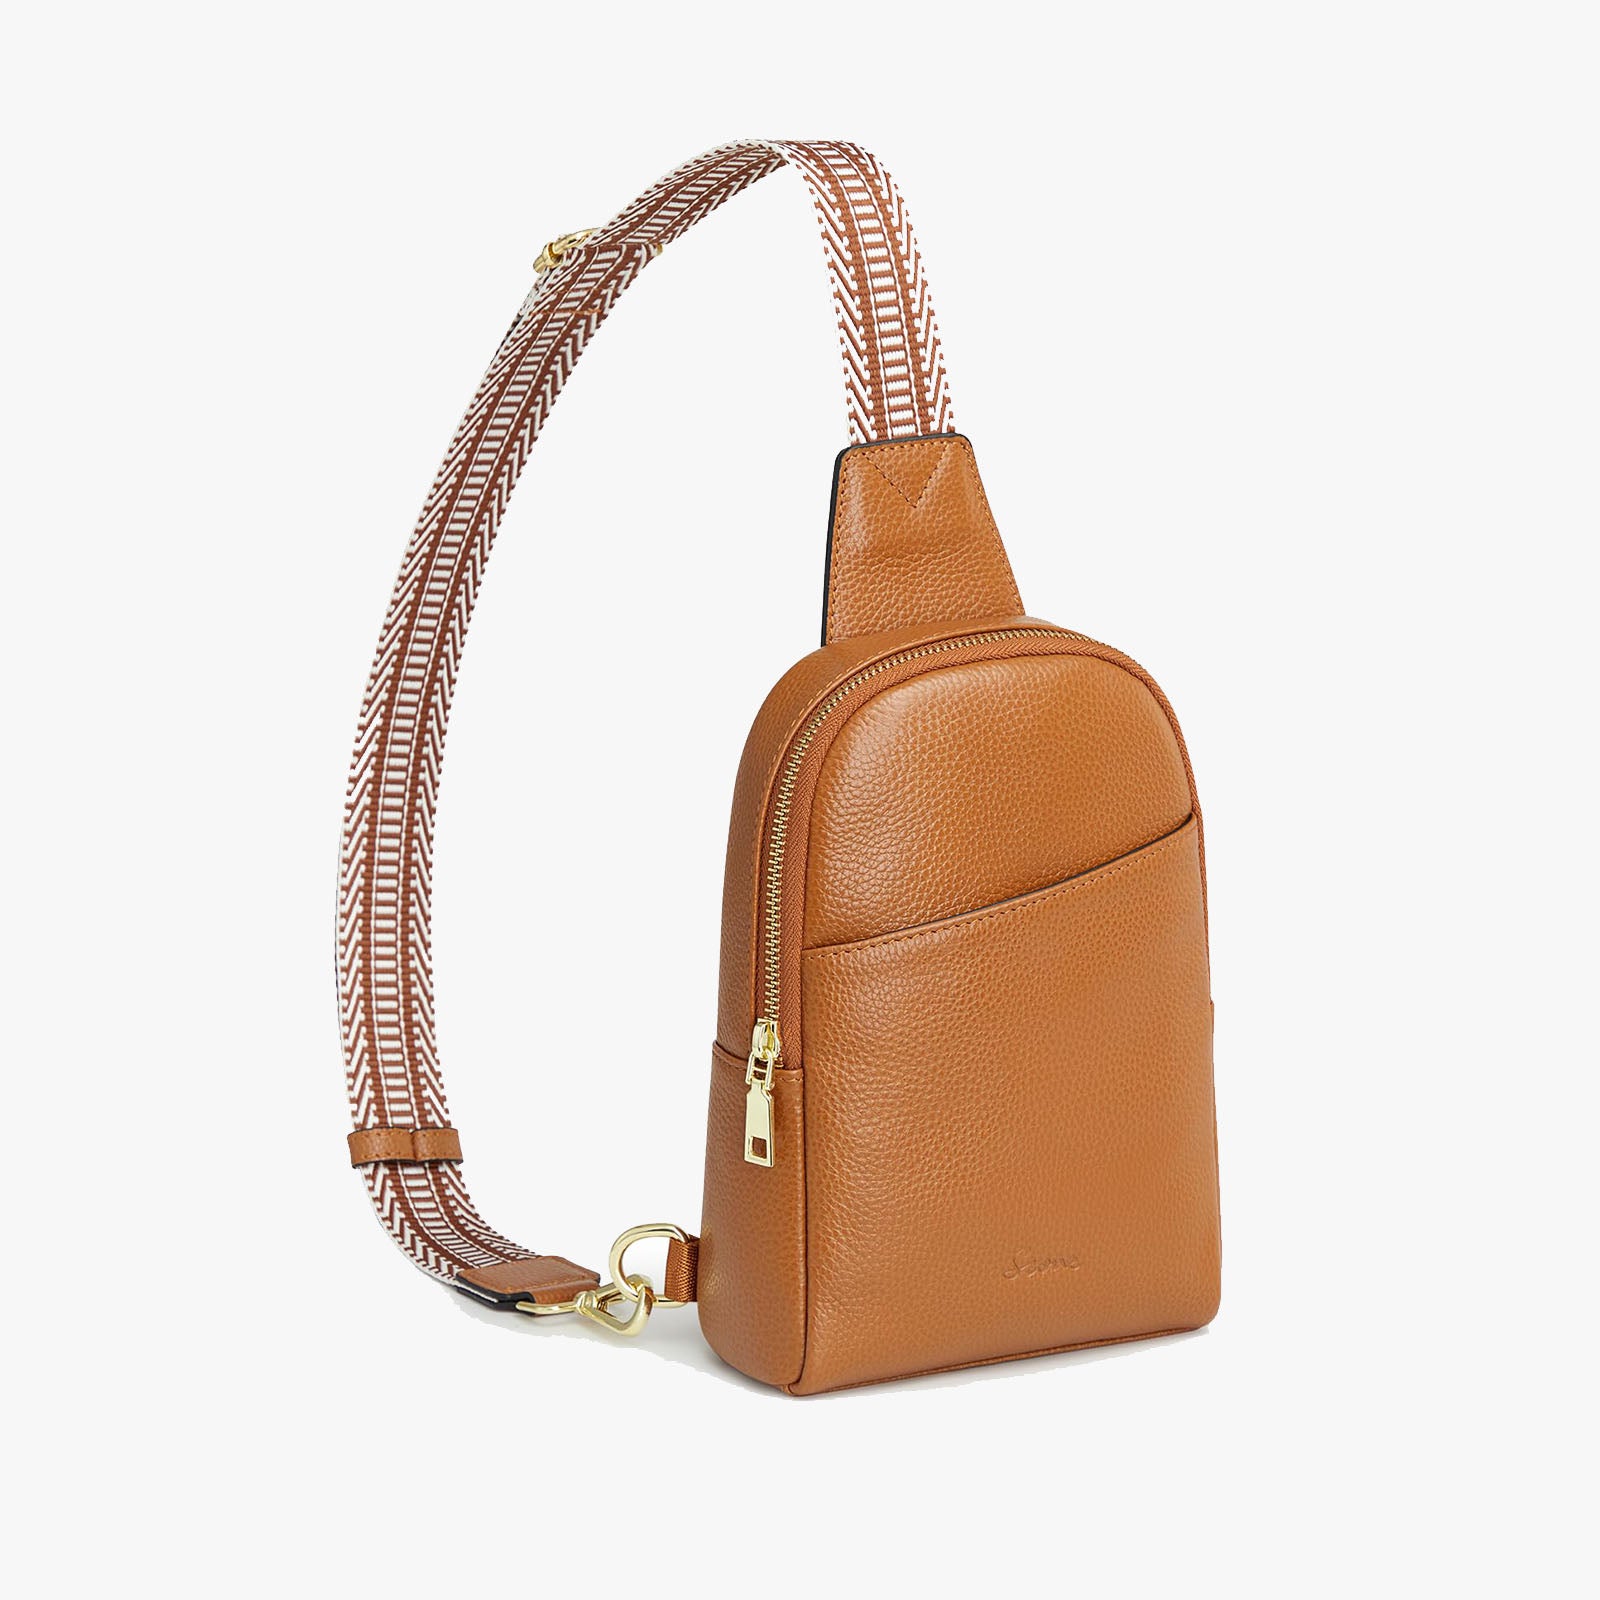 Genuine leather tech bags | Der Lederhändler - 044 878 1860